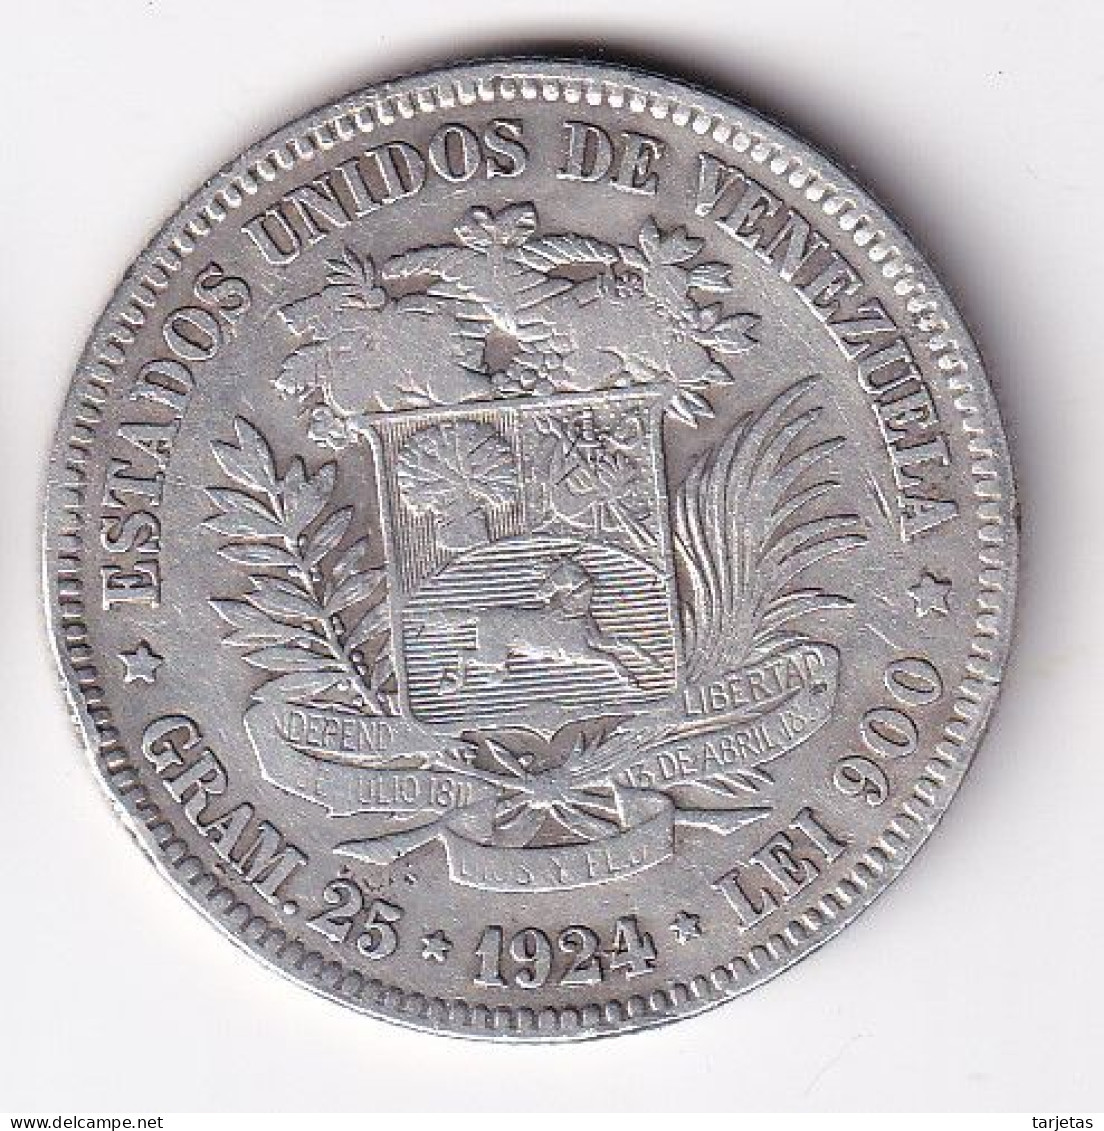 MONEDA DE PLATA DE VENEZUELA DE 5 BOLIVARES DEL AÑO 1924  (COIN) SILVER,ARGENT. - Venezuela